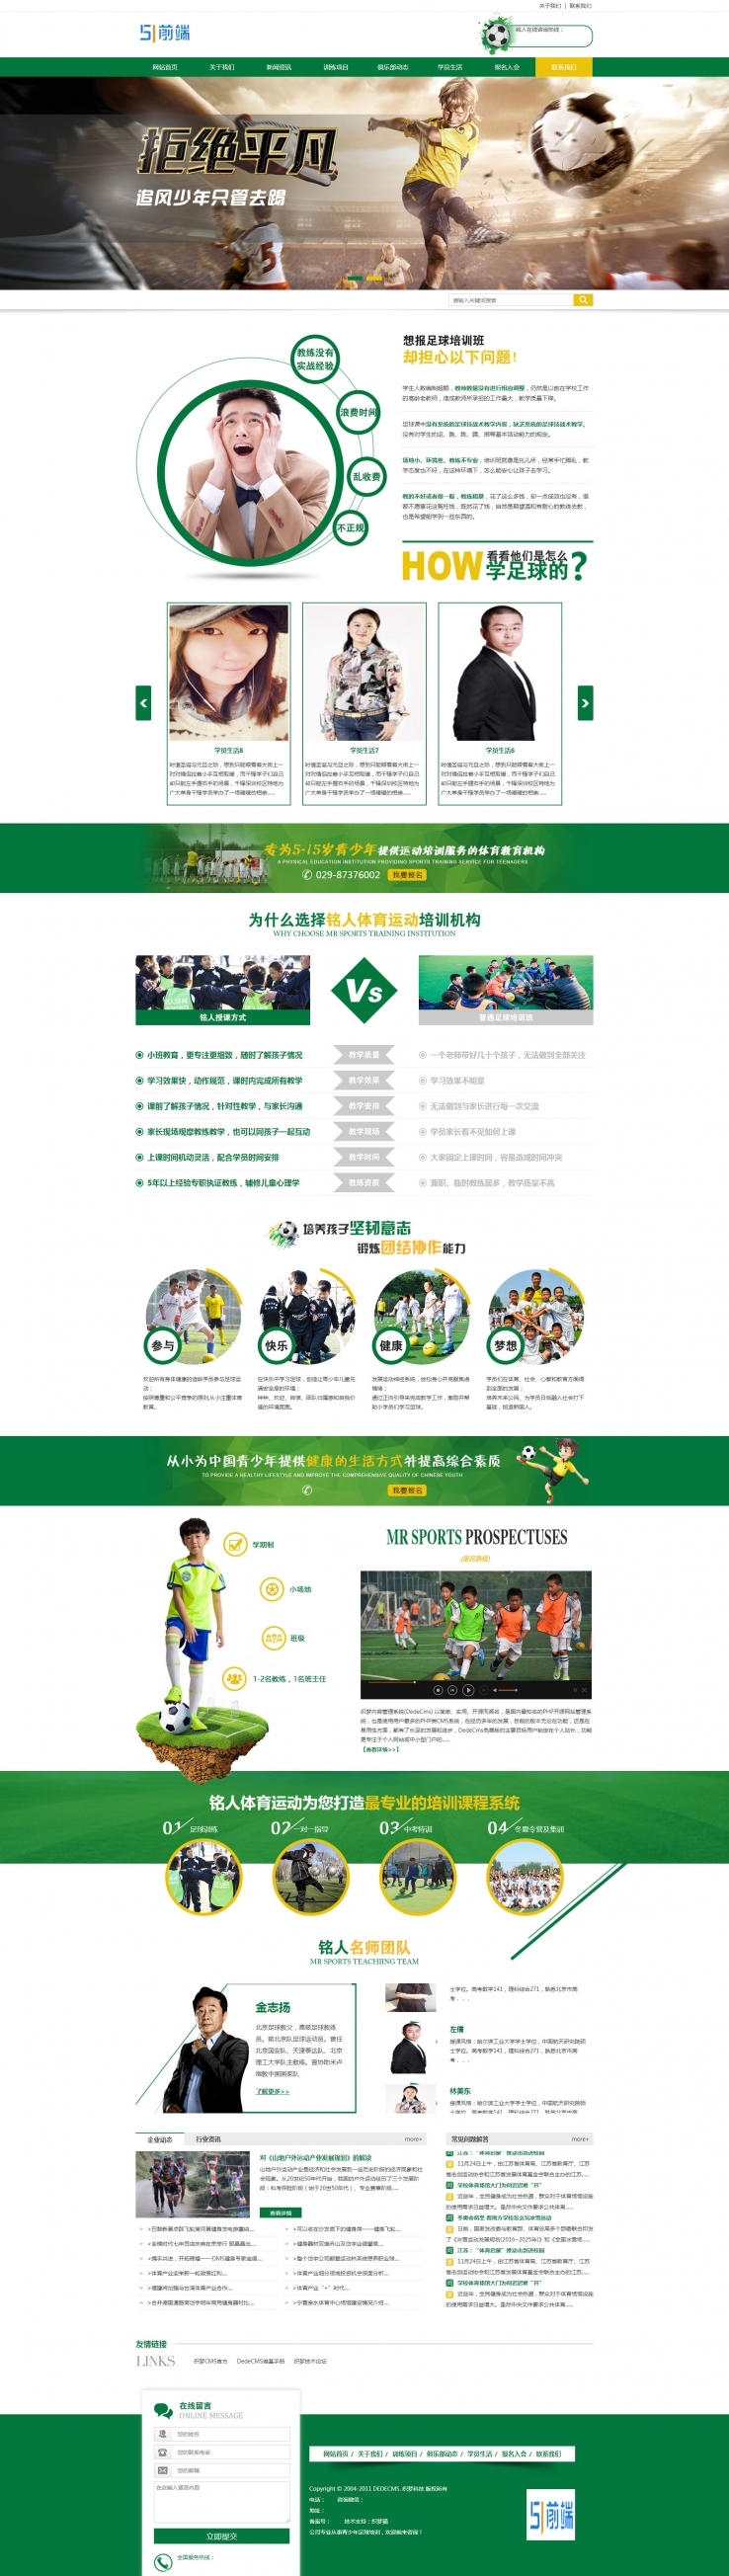 绿色体育培训机构类营销型网站dedecms模板